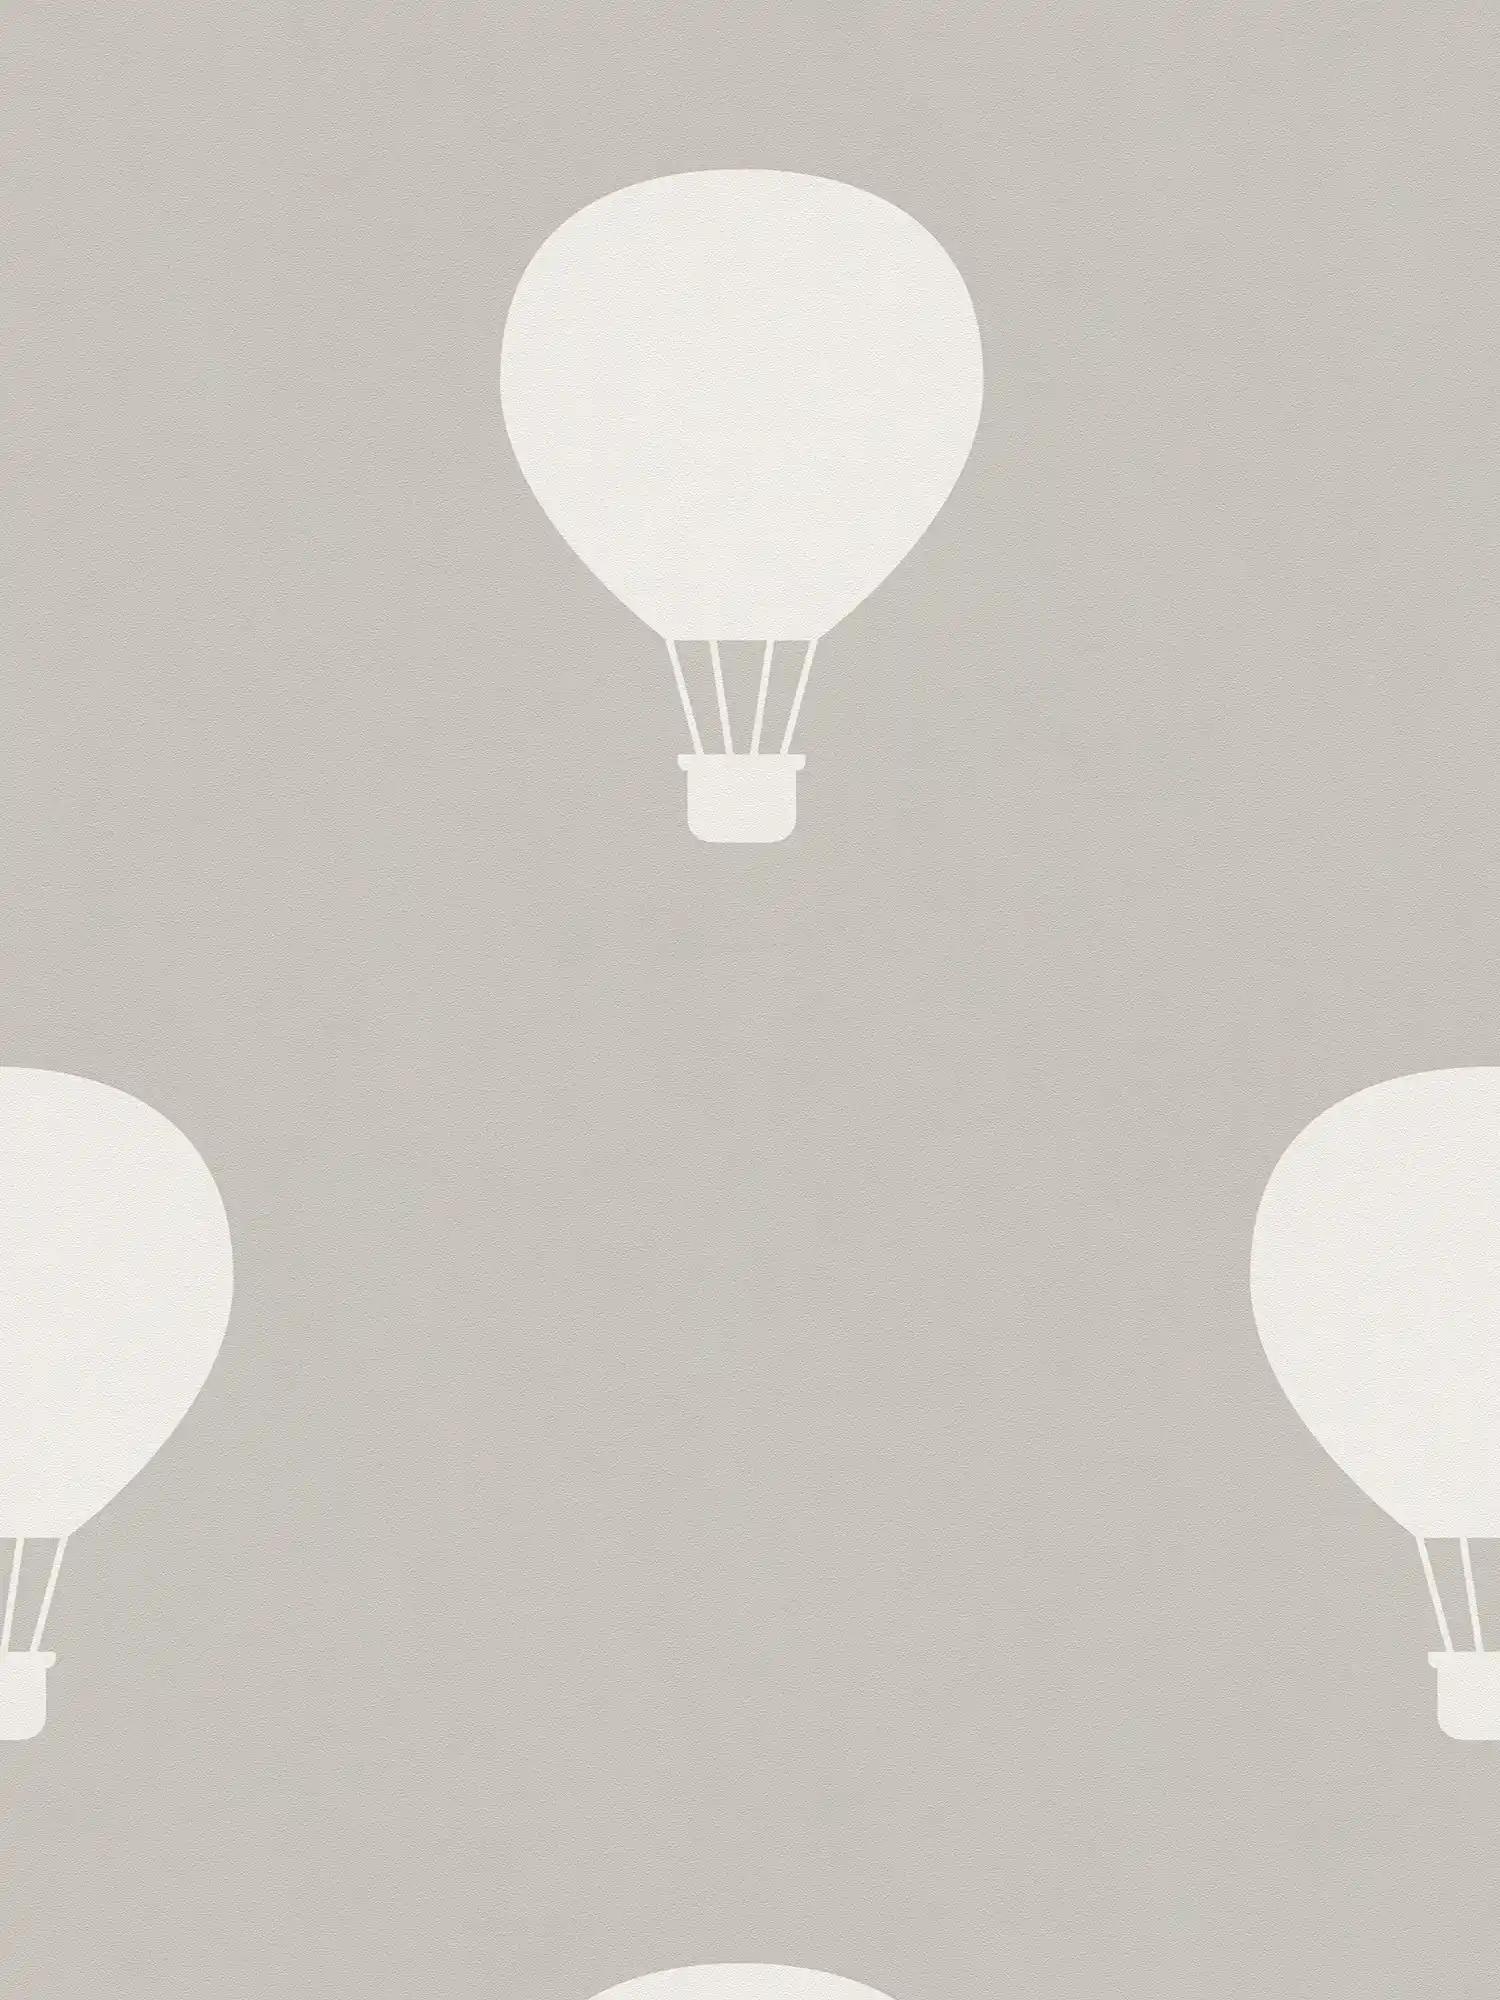 Non-woven wallpaper with hot balloons for Nursery - grey, cream
